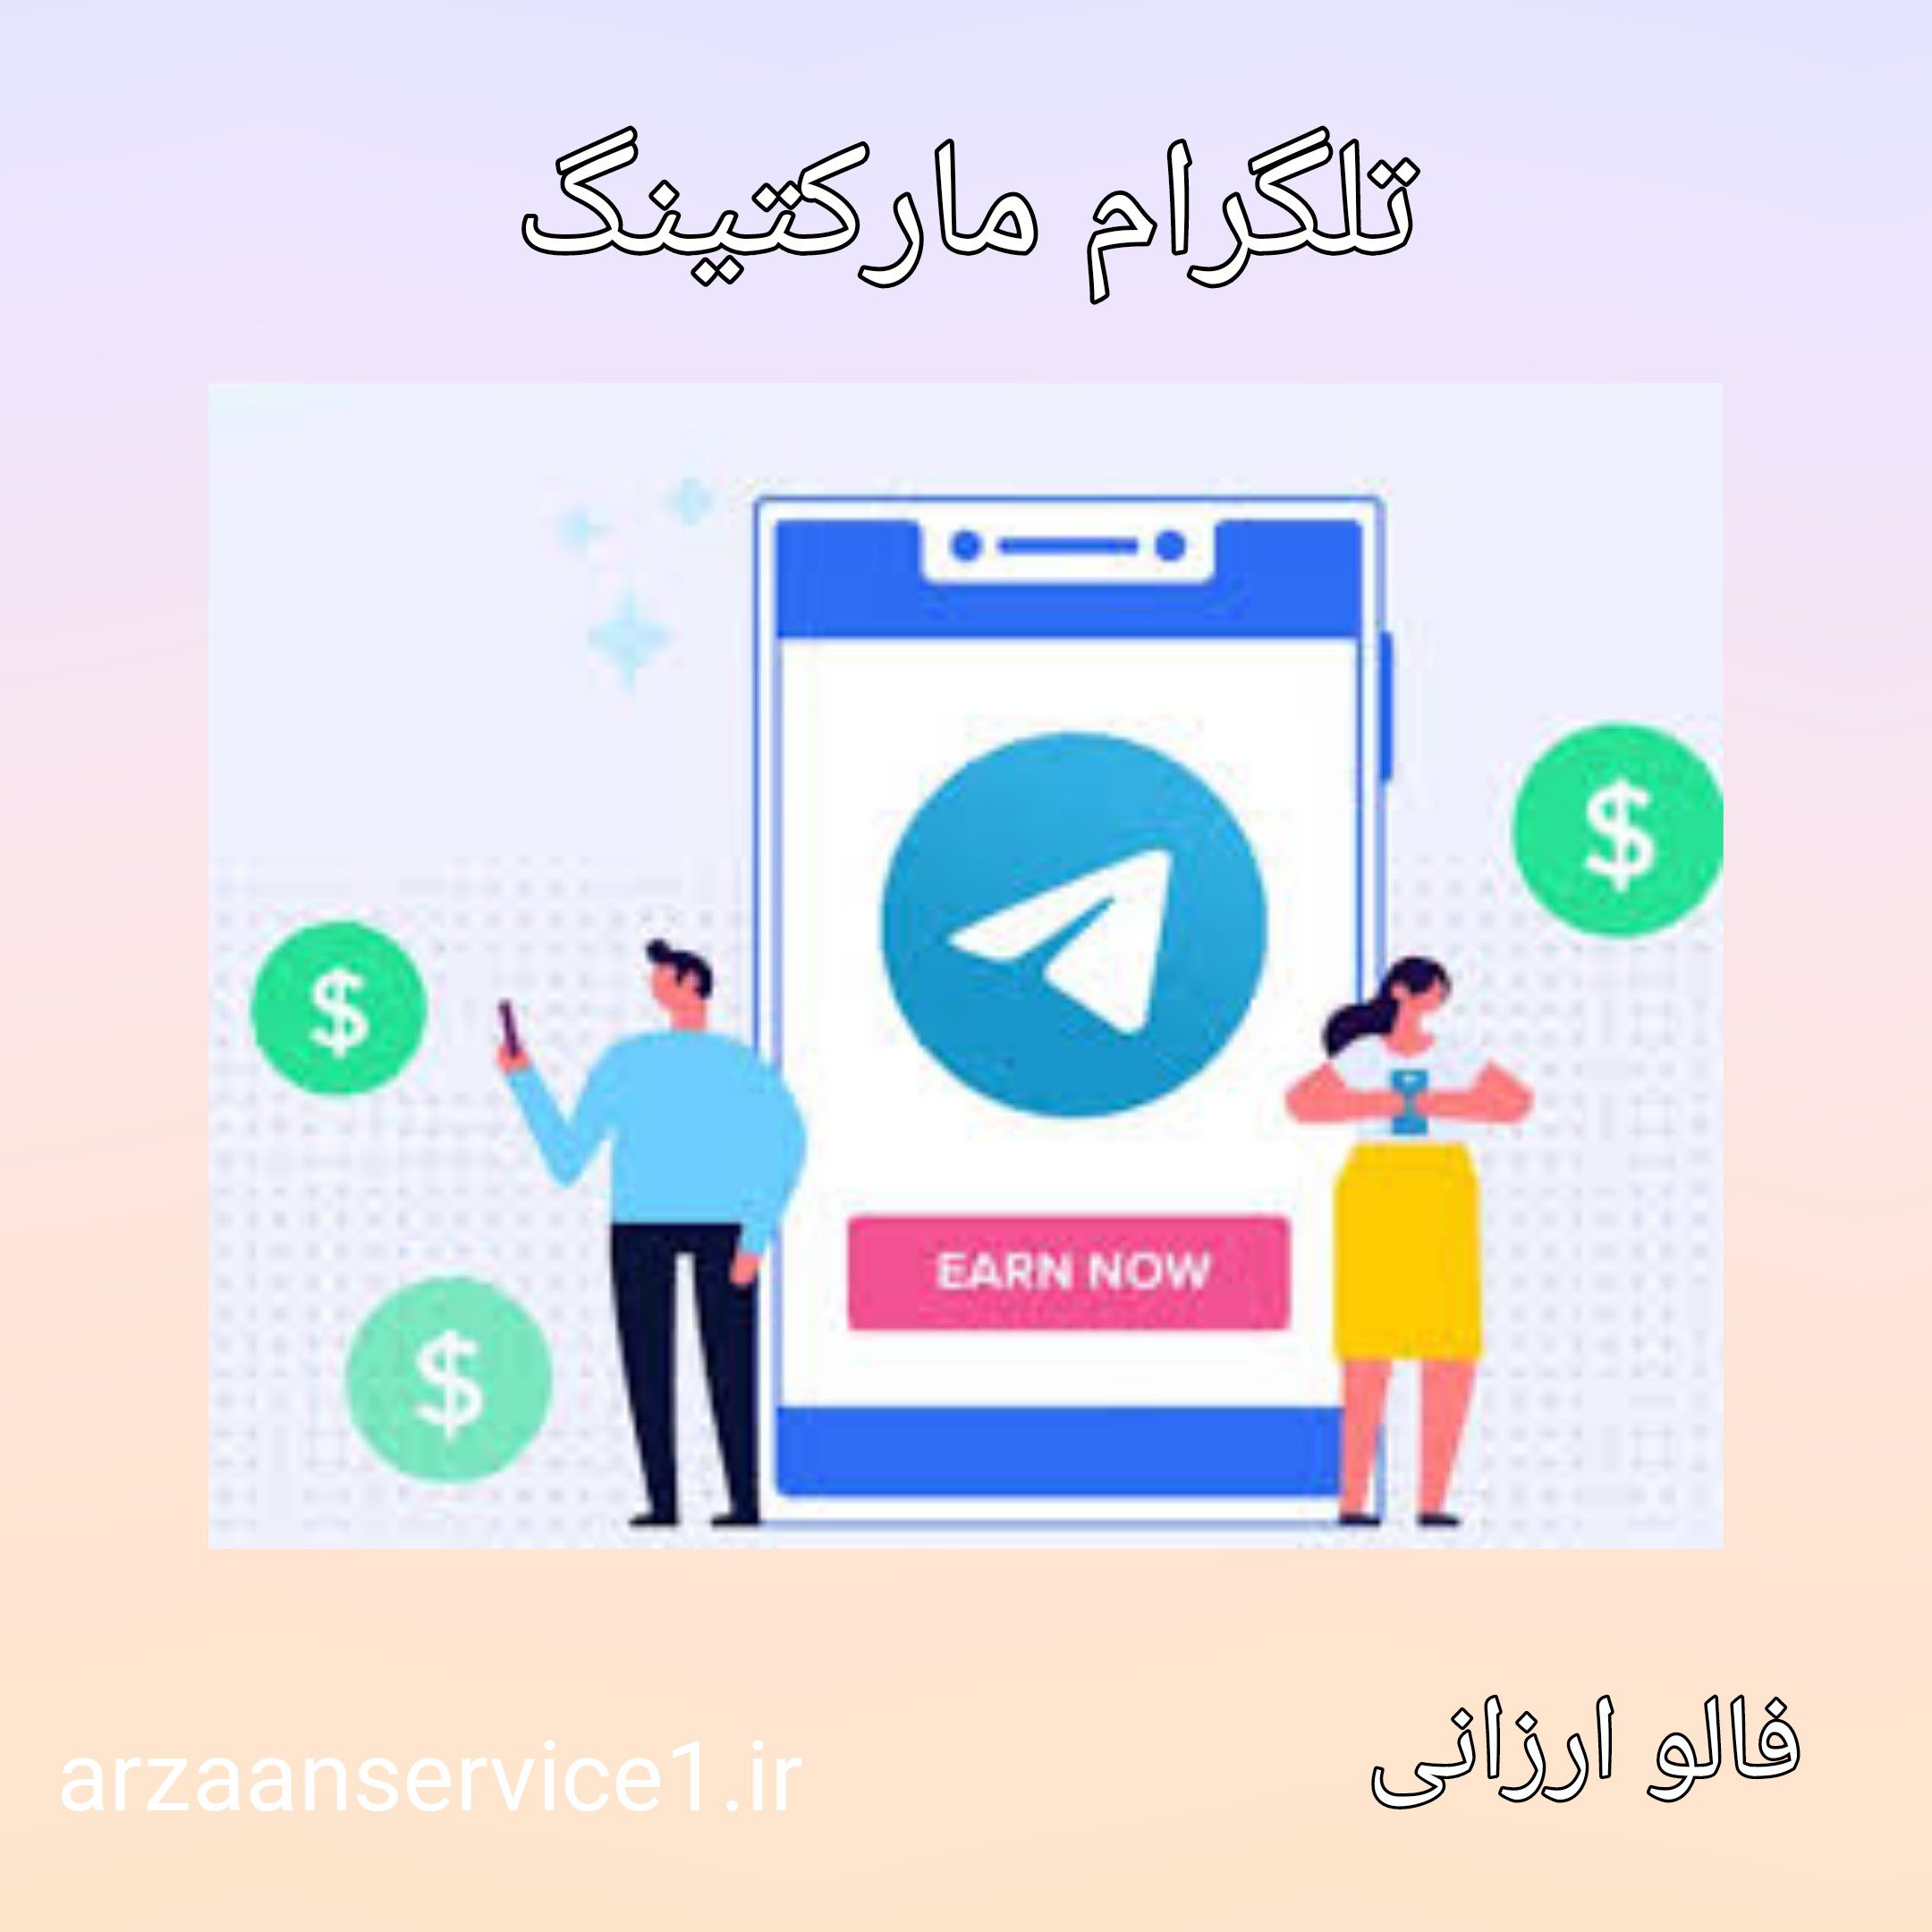 تلگرام مارکتینگ ،تلگرام مارکتینگ چیست؟ ،اصول و تکنیک های تلگرام مارکتینگ ،مزایای تلگرام مارکتینگ ،انواع بازاریابی در تلگرام